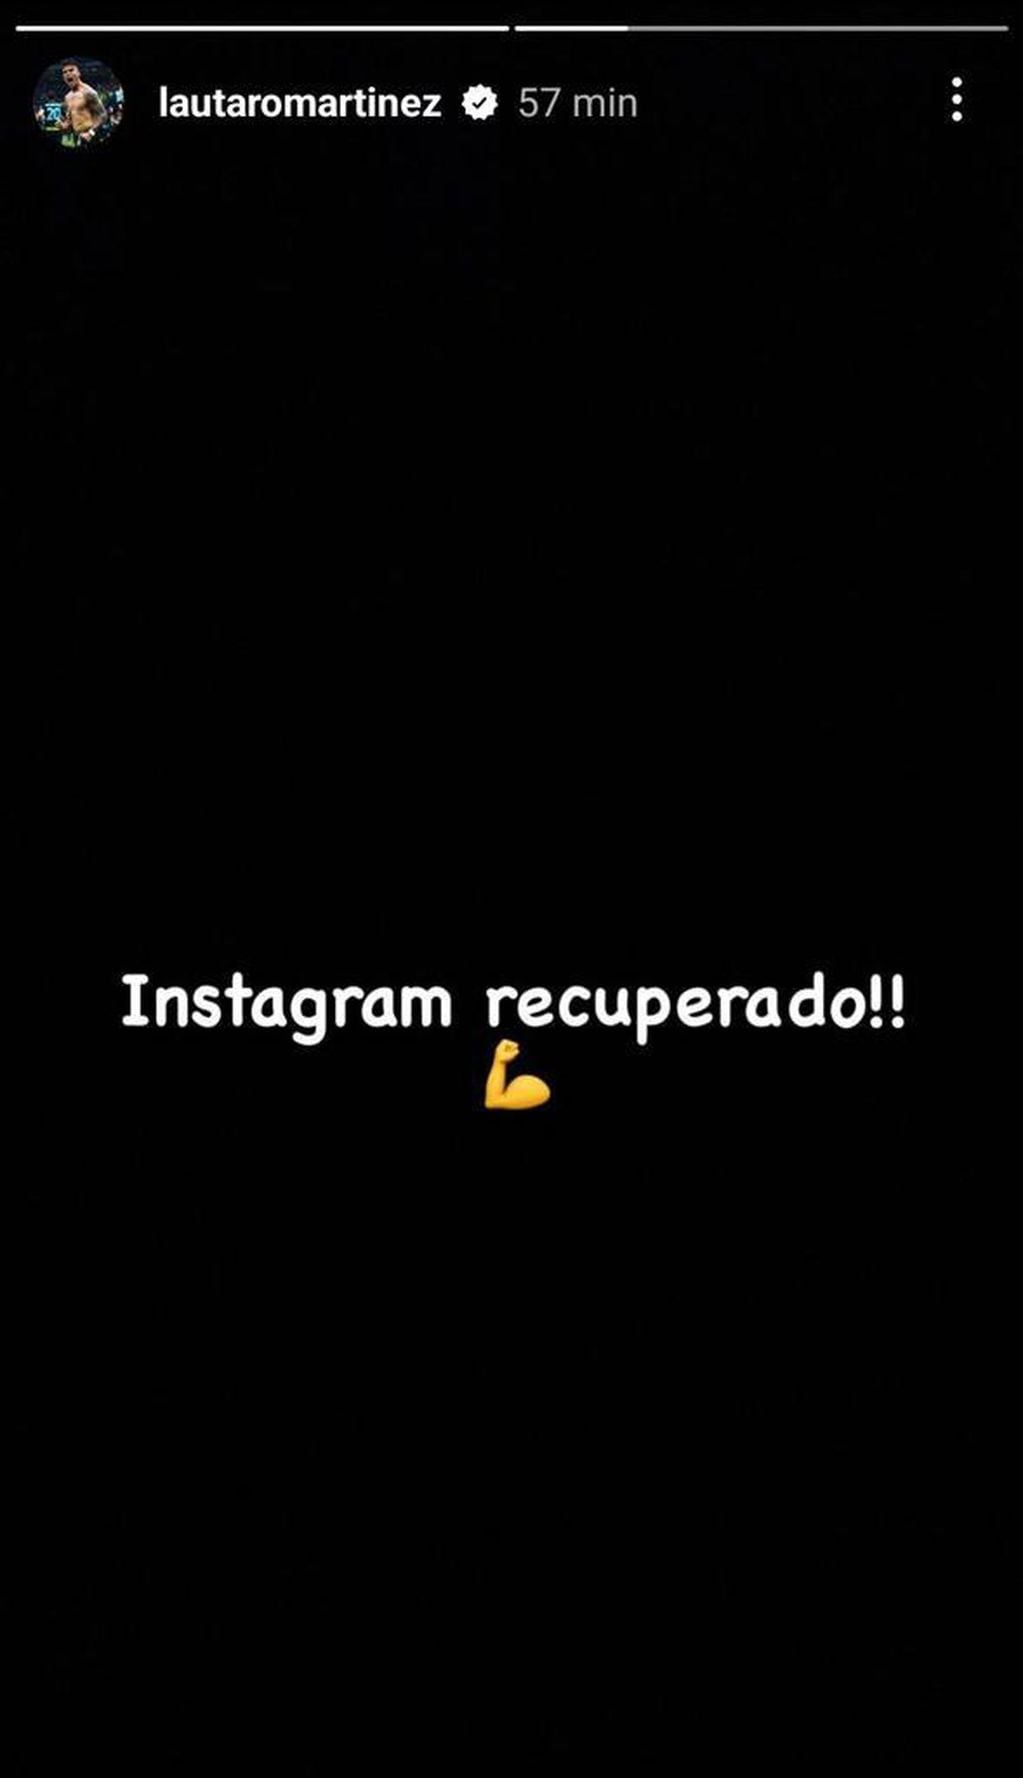 Lautaro Martínez disipó los rumores de separación y recuperó su cuenta de Instagram.